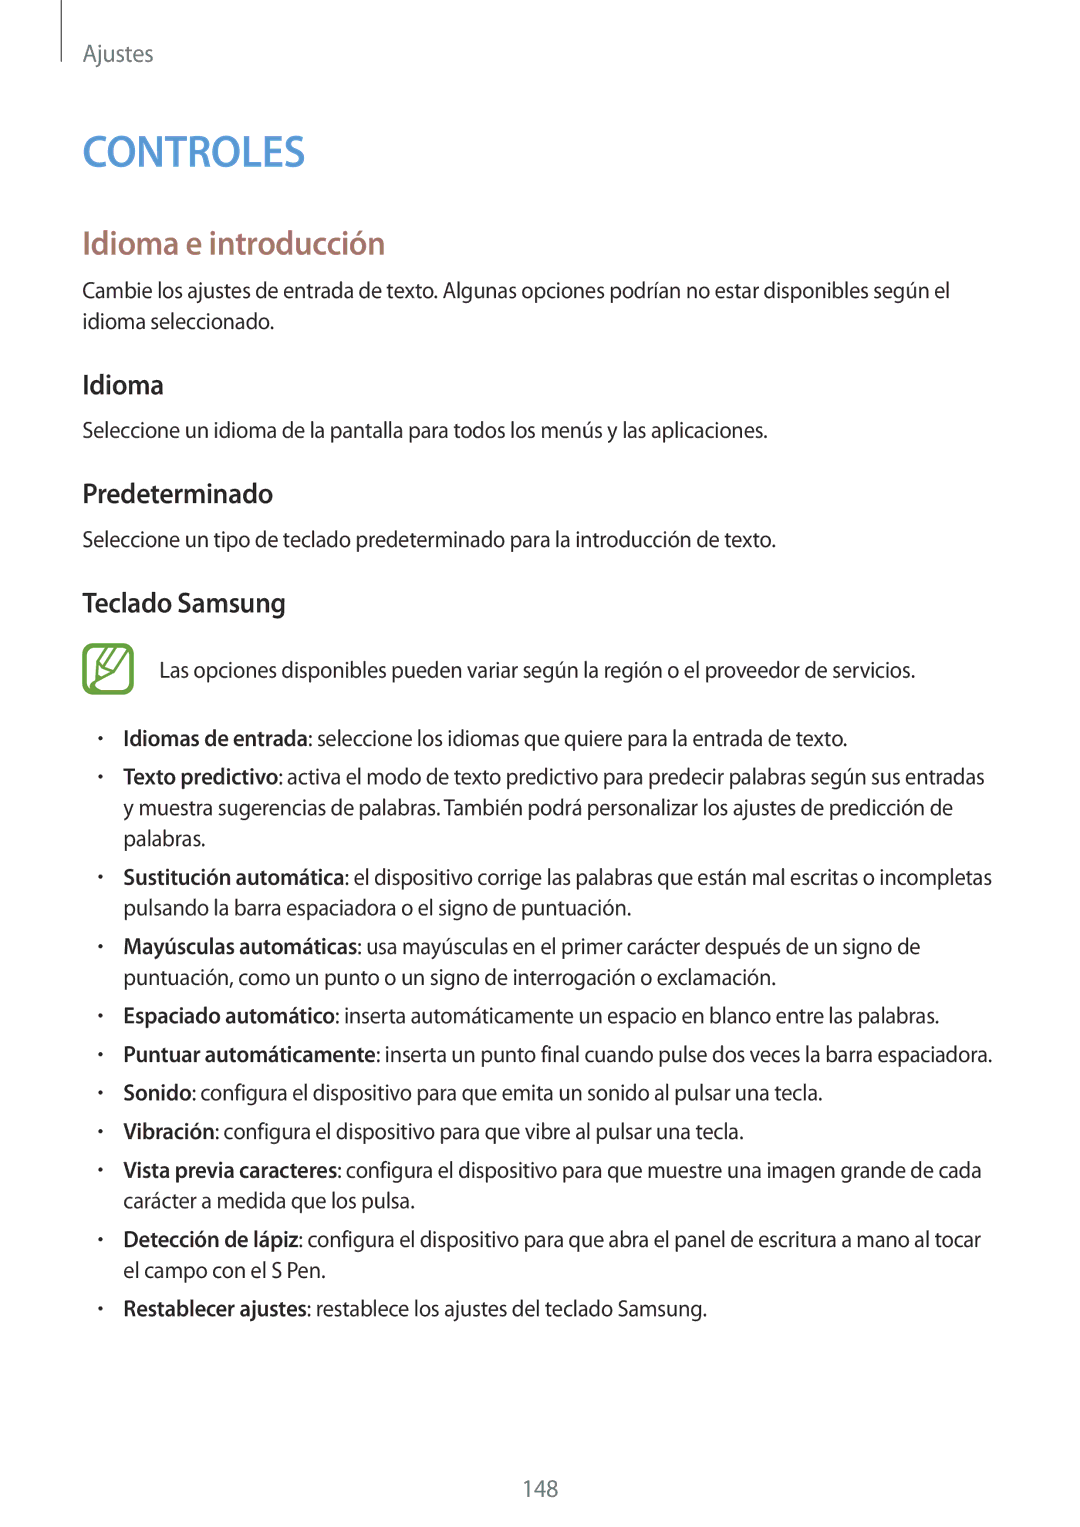 Samsung SM-N9005ZIEYOG, SM-N9005ZWEITV, SM-N9005ZWEDBT manual Idioma e introducción, Predeterminado, Teclado Samsung 